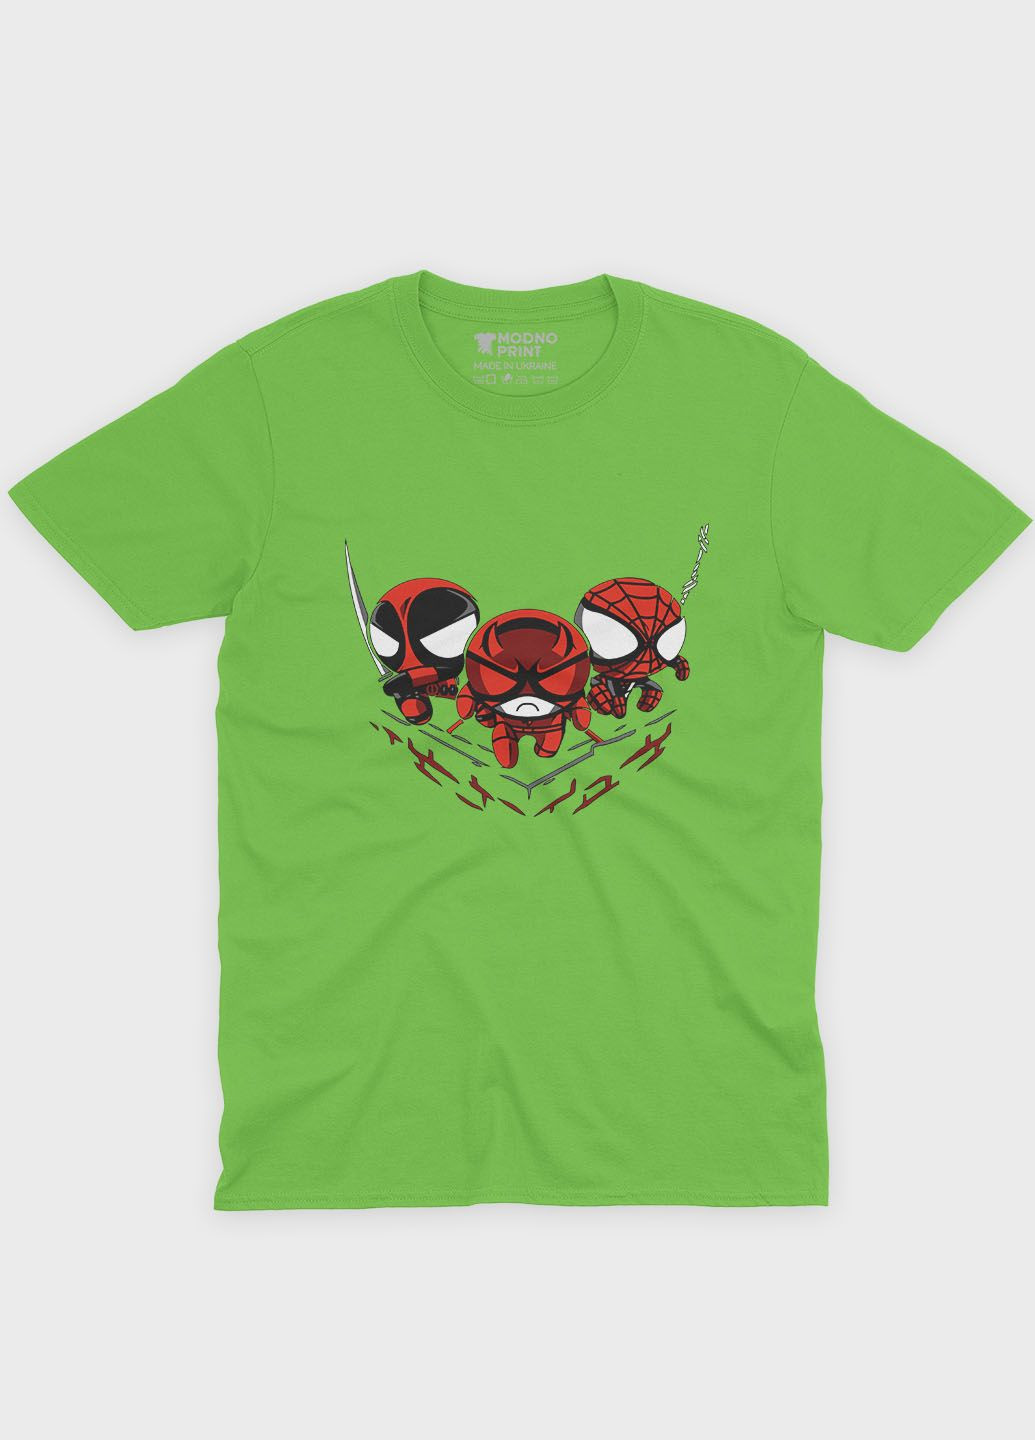 Салатова демісезонна футболка для дівчинки з принтом супергероя - людина-павук (ts001-1-kiw-006-014-069-g) Modno